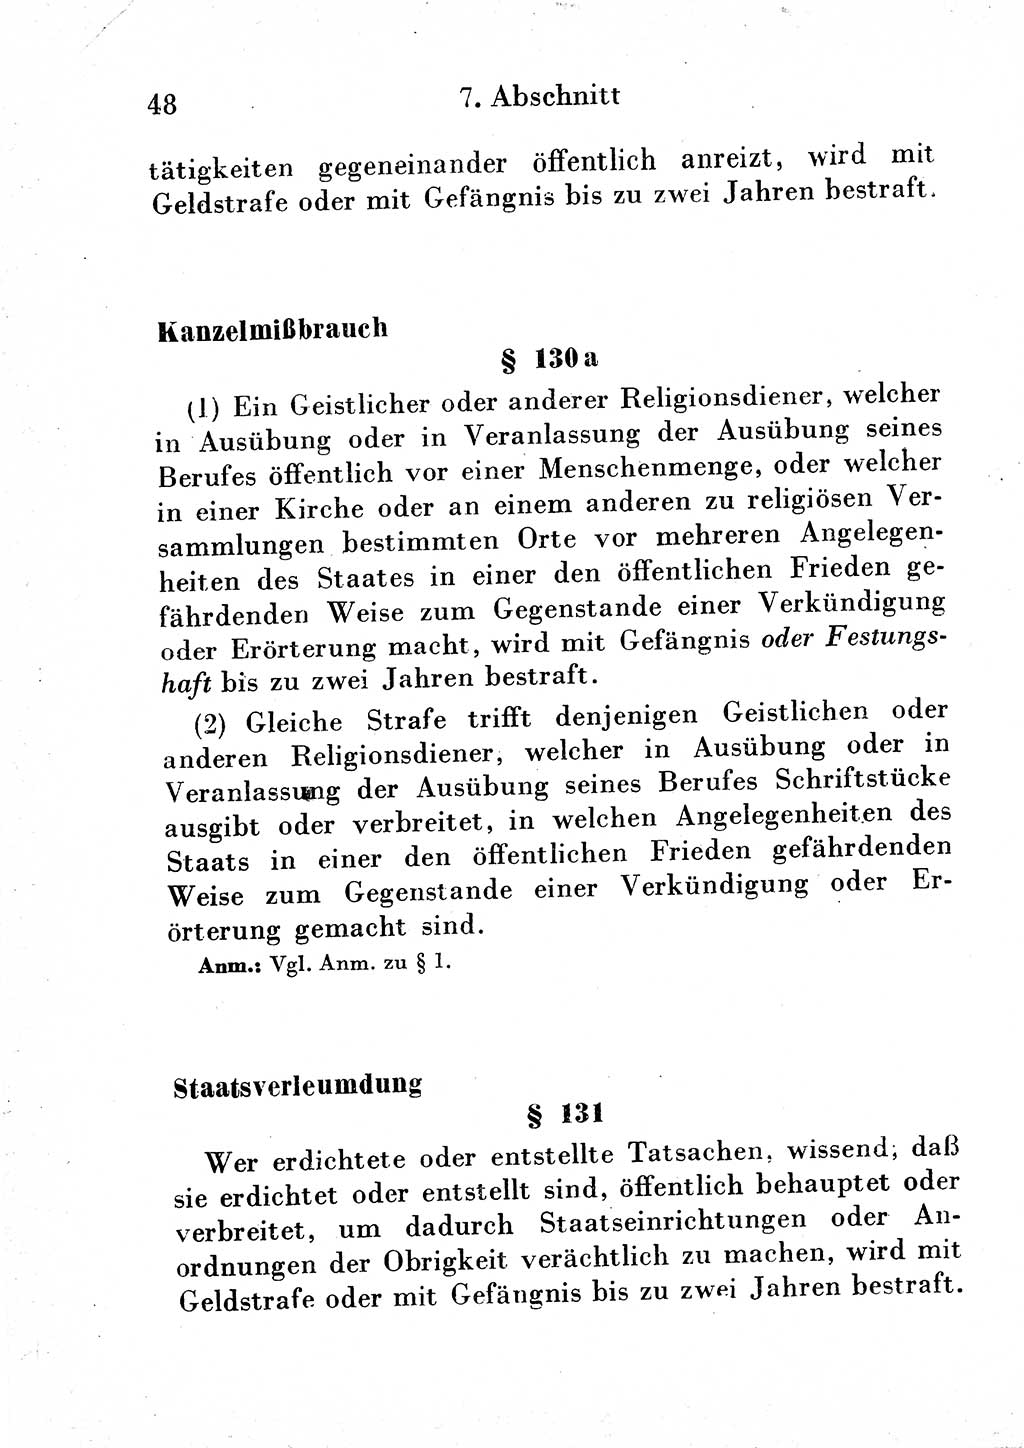 Strafgesetzbuch (StGB) und andere Strafgesetze [Deutsche Demokratische Republik (DDR)] 1954, Seite 48 (StGB Strafges. DDR 1954, S. 48)